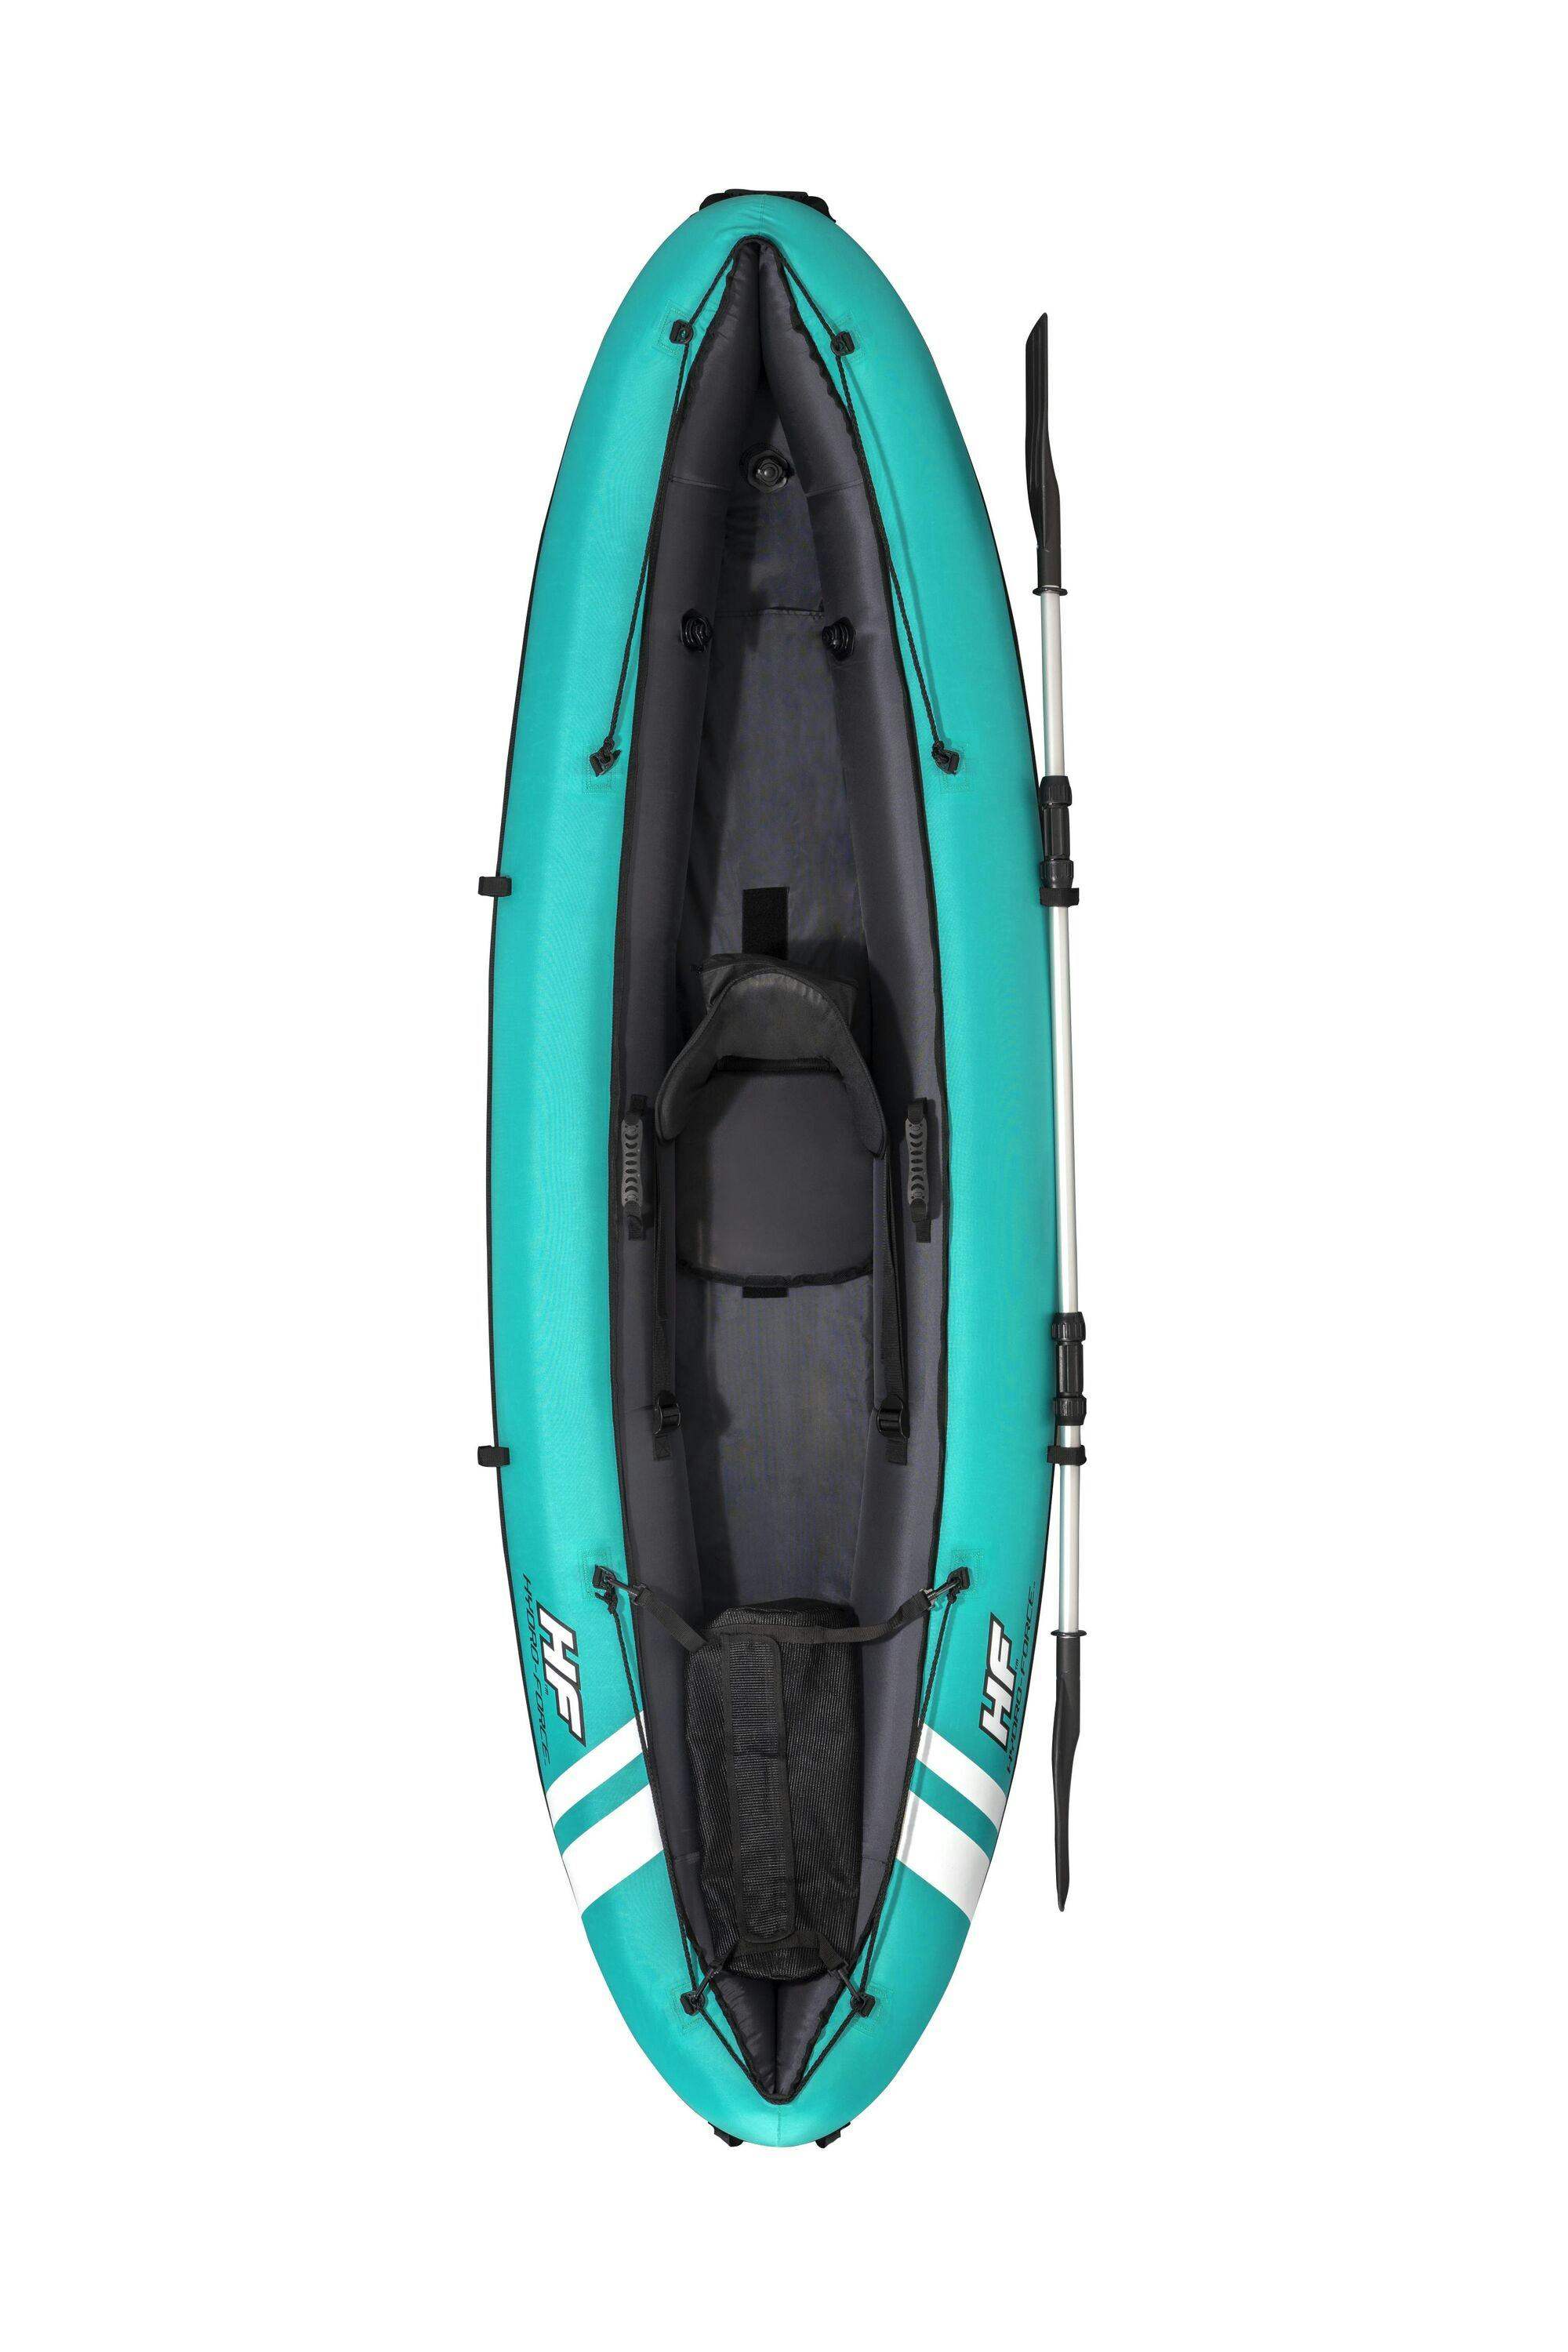 Sports d'eau Kayak gonflable Hydro-Force™ Ventura Elite X1 280 x 86 cm 1 personne, pagaie, pompe Bestway 4